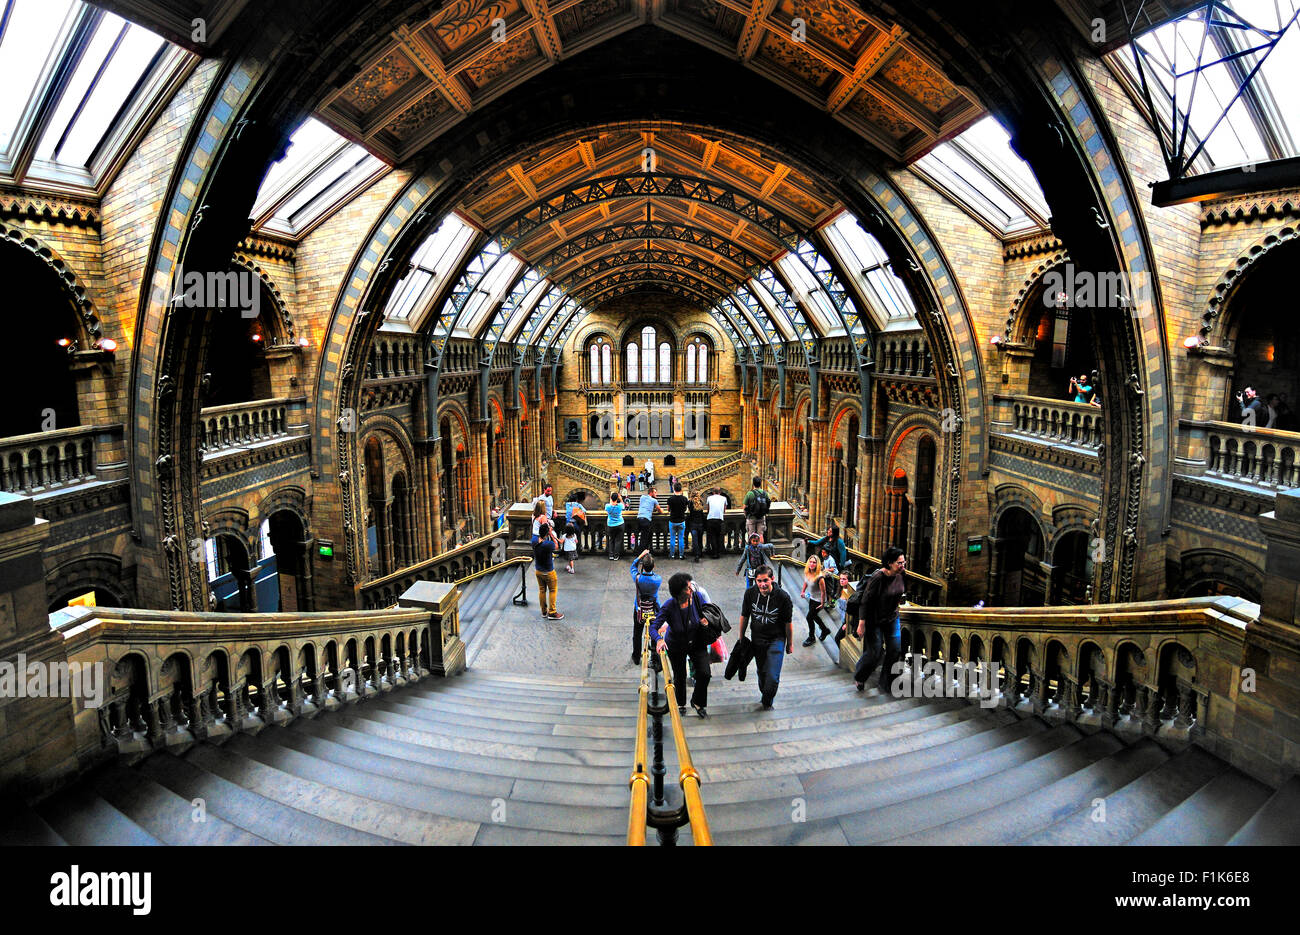 Londra, Inghilterra, Regno Unito. Museo di Storia Naturale, Kensington. Interni - sala centrale Foto Stock